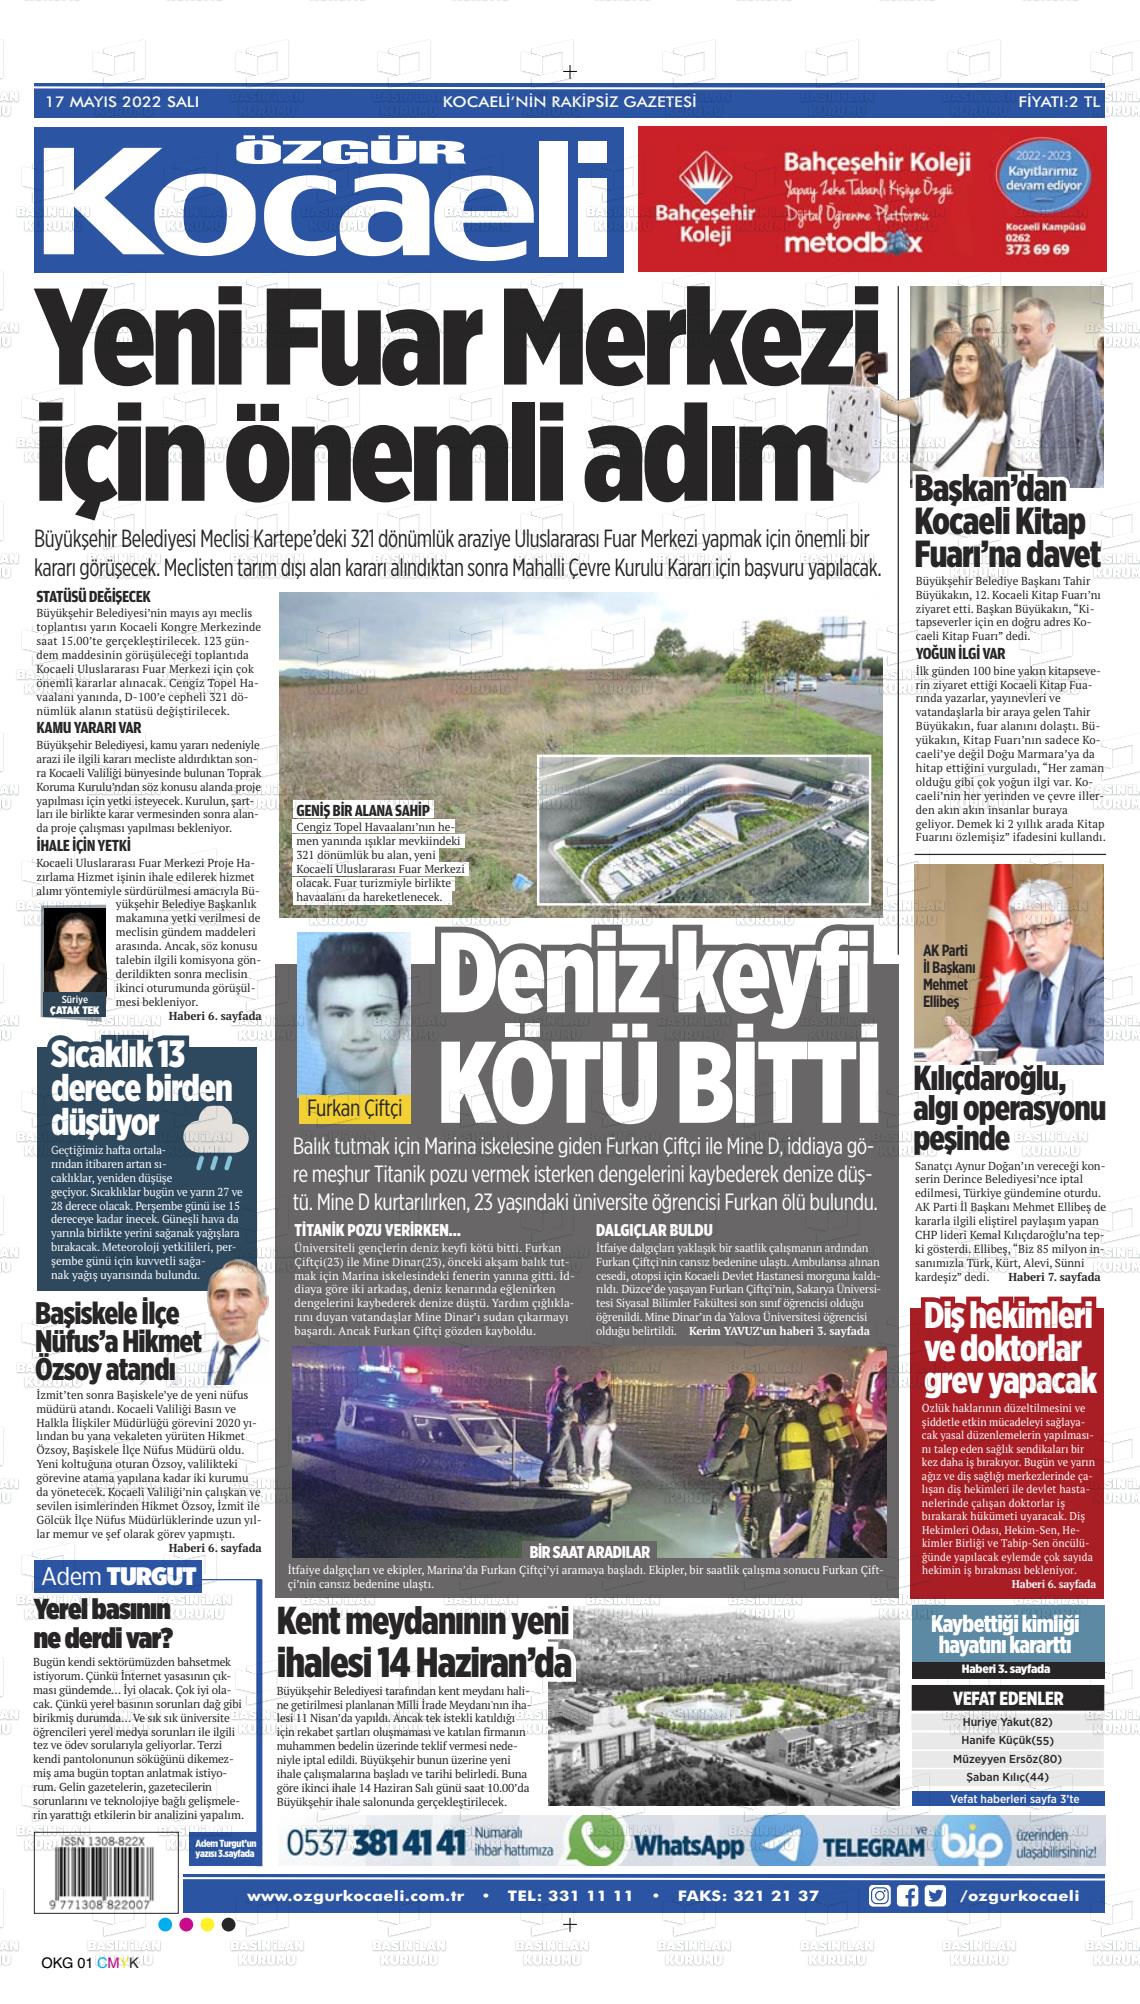 17 Mayıs 2022 Özgür Kocaeli Gazete Manşeti